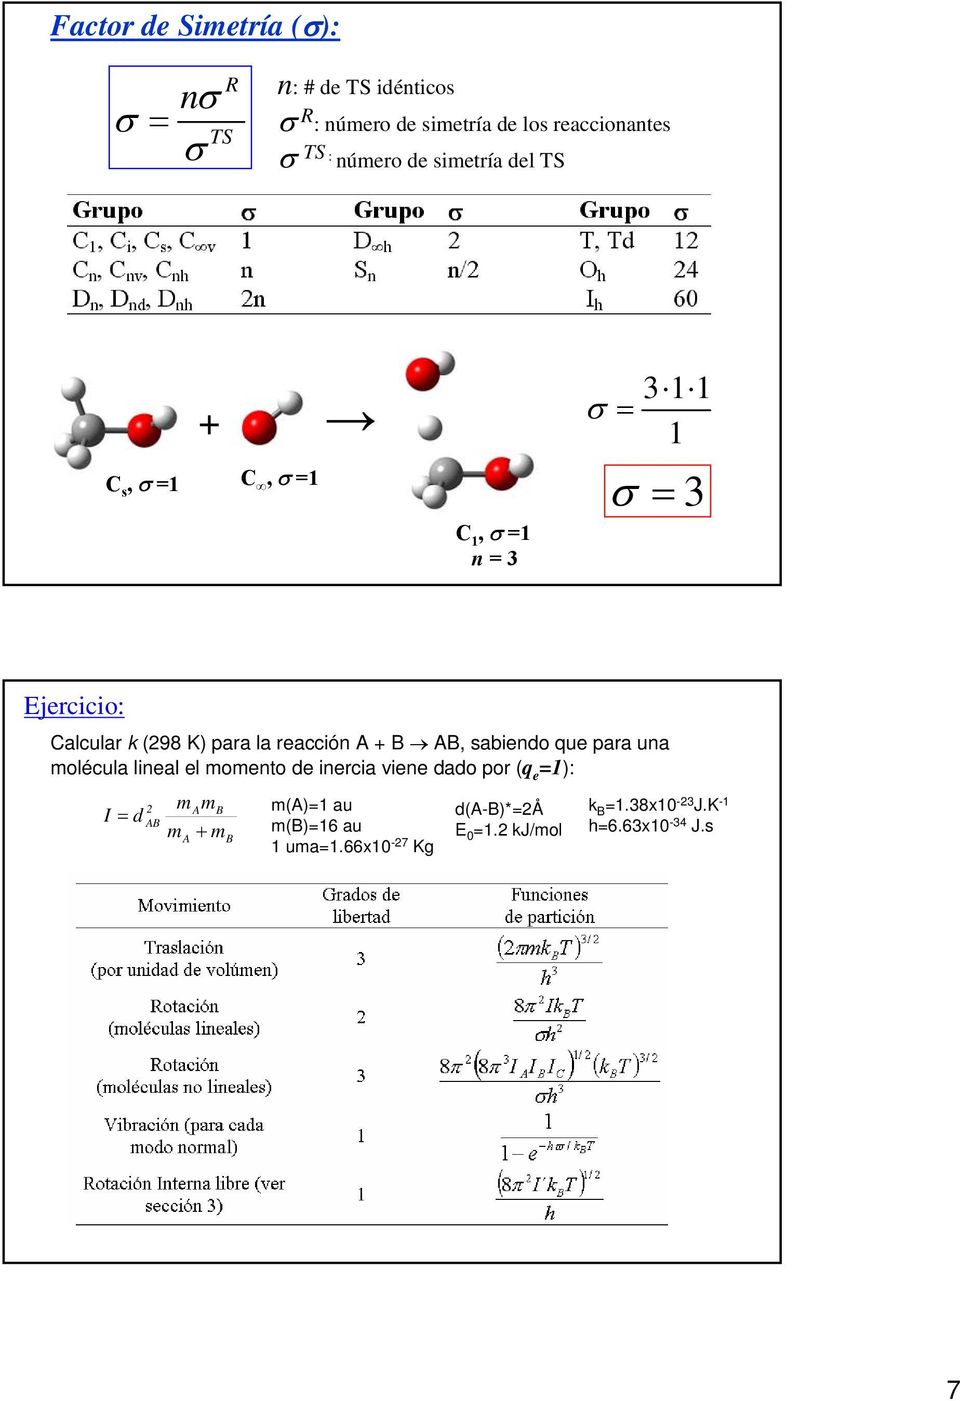 K) para la racción +, sabindo u para una molécula linal l momnto d inrcia vin dado por ( 1): I d